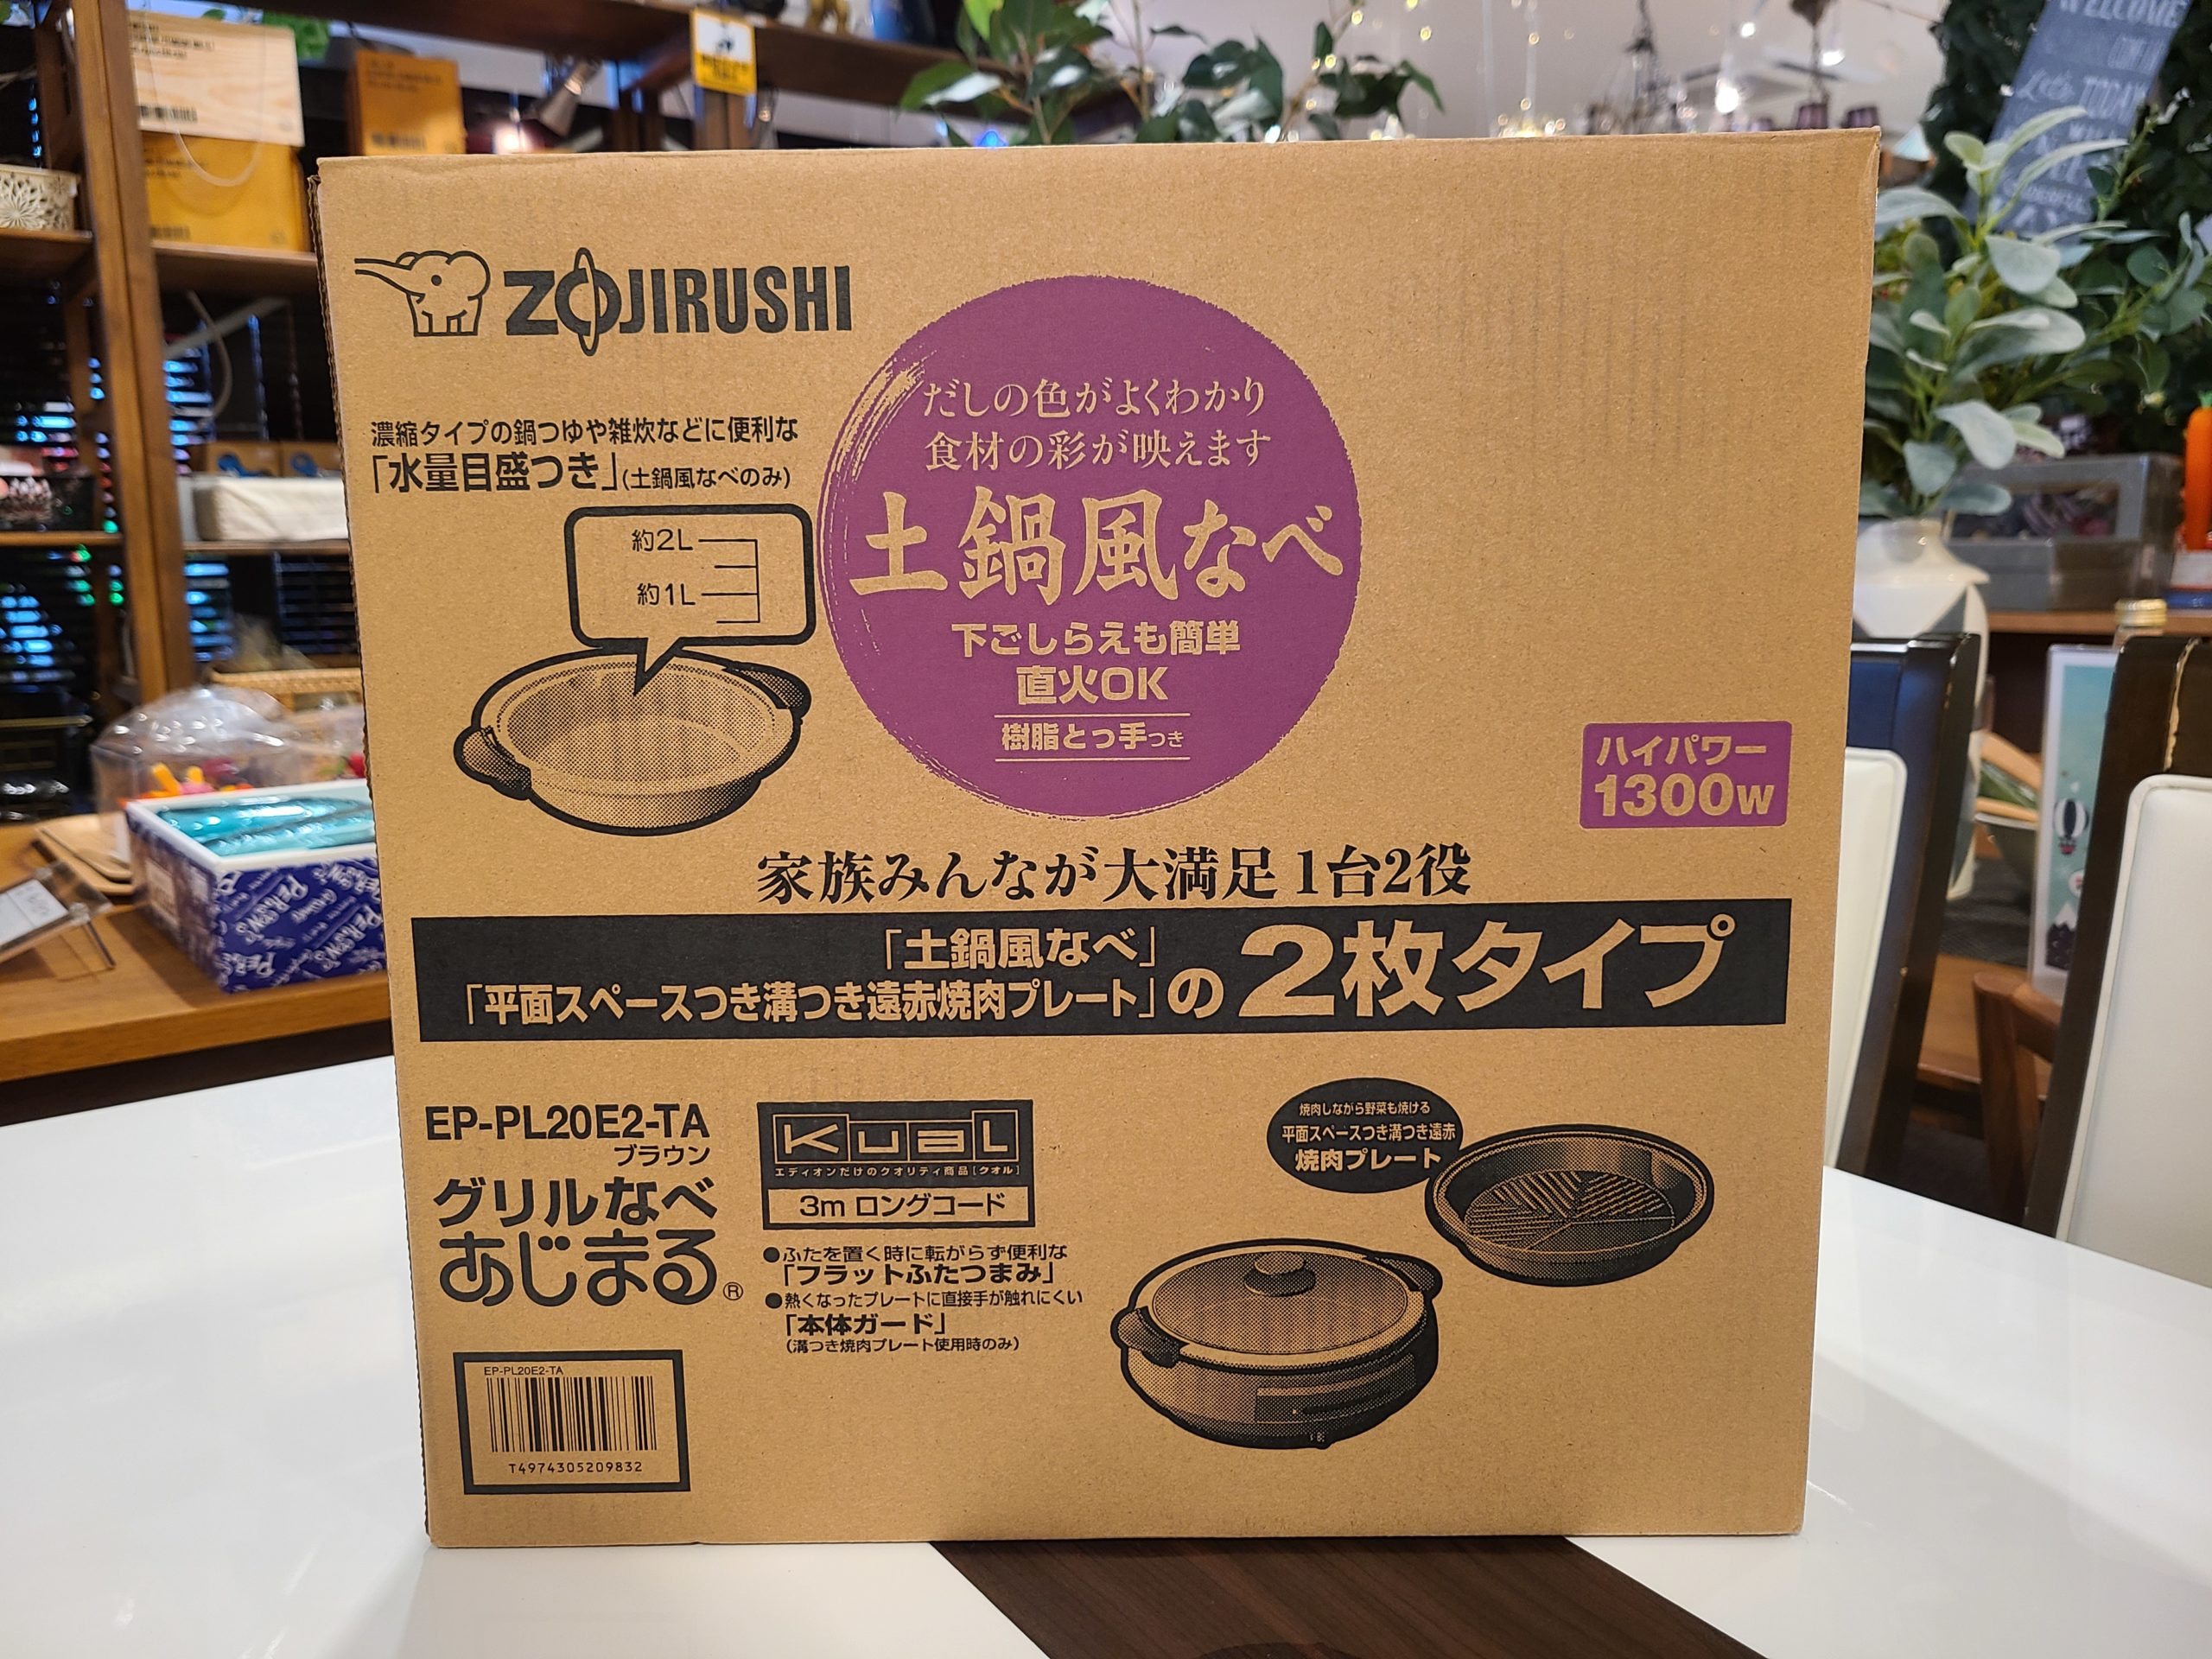 新品未使用品】 ZOJIRUSHI / 象印 グリルなべ あじまる 土鍋風なべ